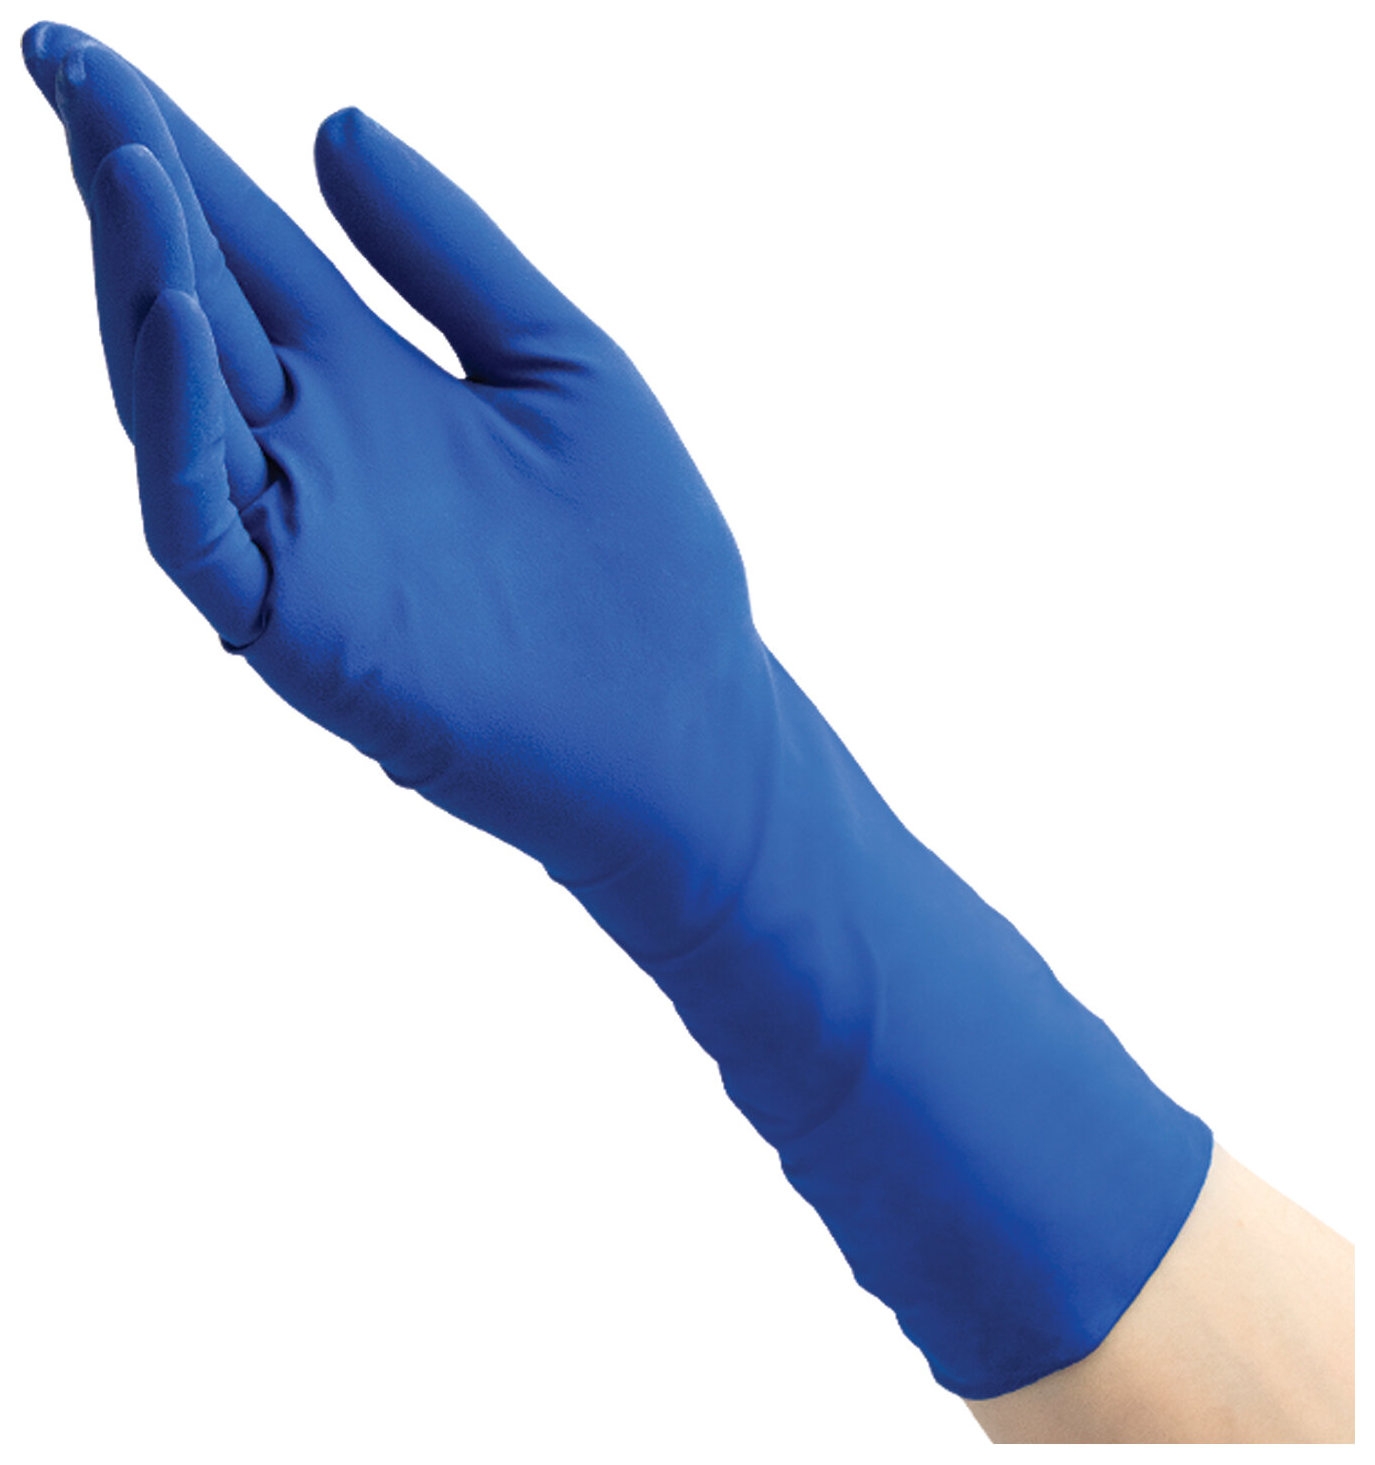 Перчатки латексные смотровые Benovy High Risk 25 пар (50 шт.), неопудренные, повышенной прочности, размер L (большой), синие, -